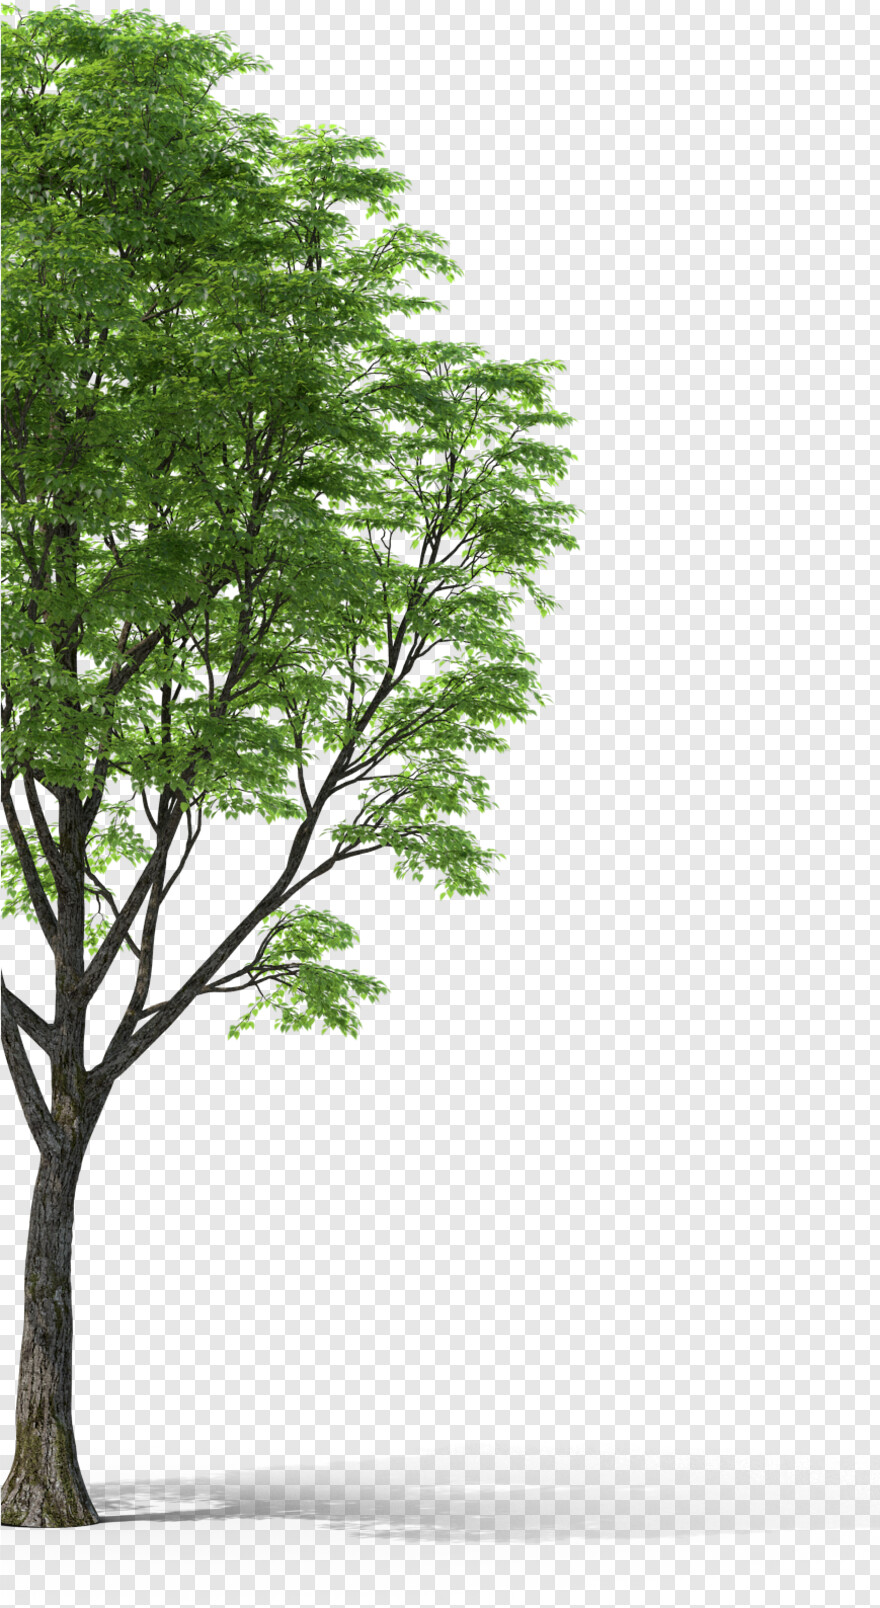 pine-tree-branch # 654307